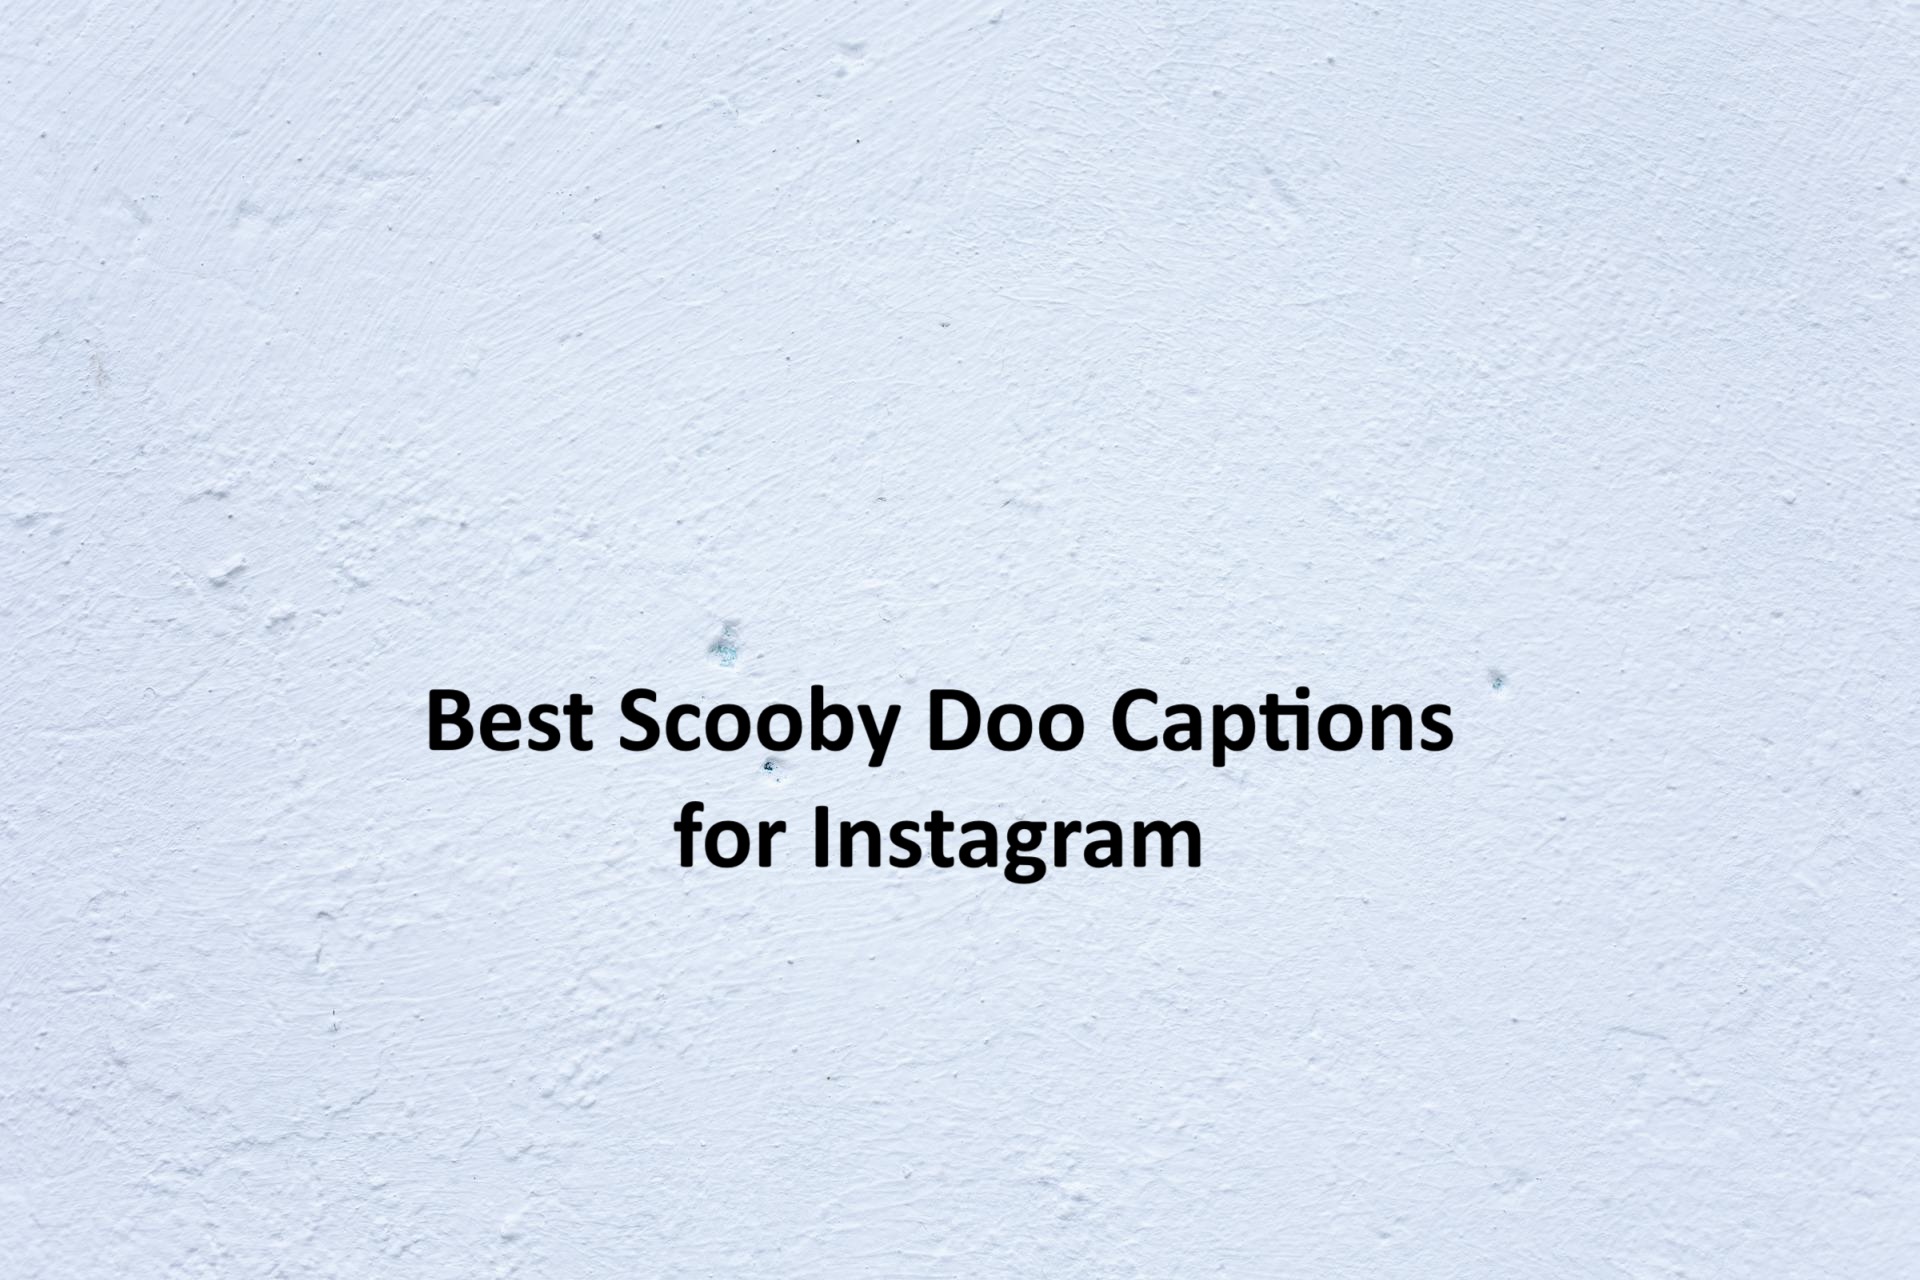 Scooby Doo Captions for Instagram